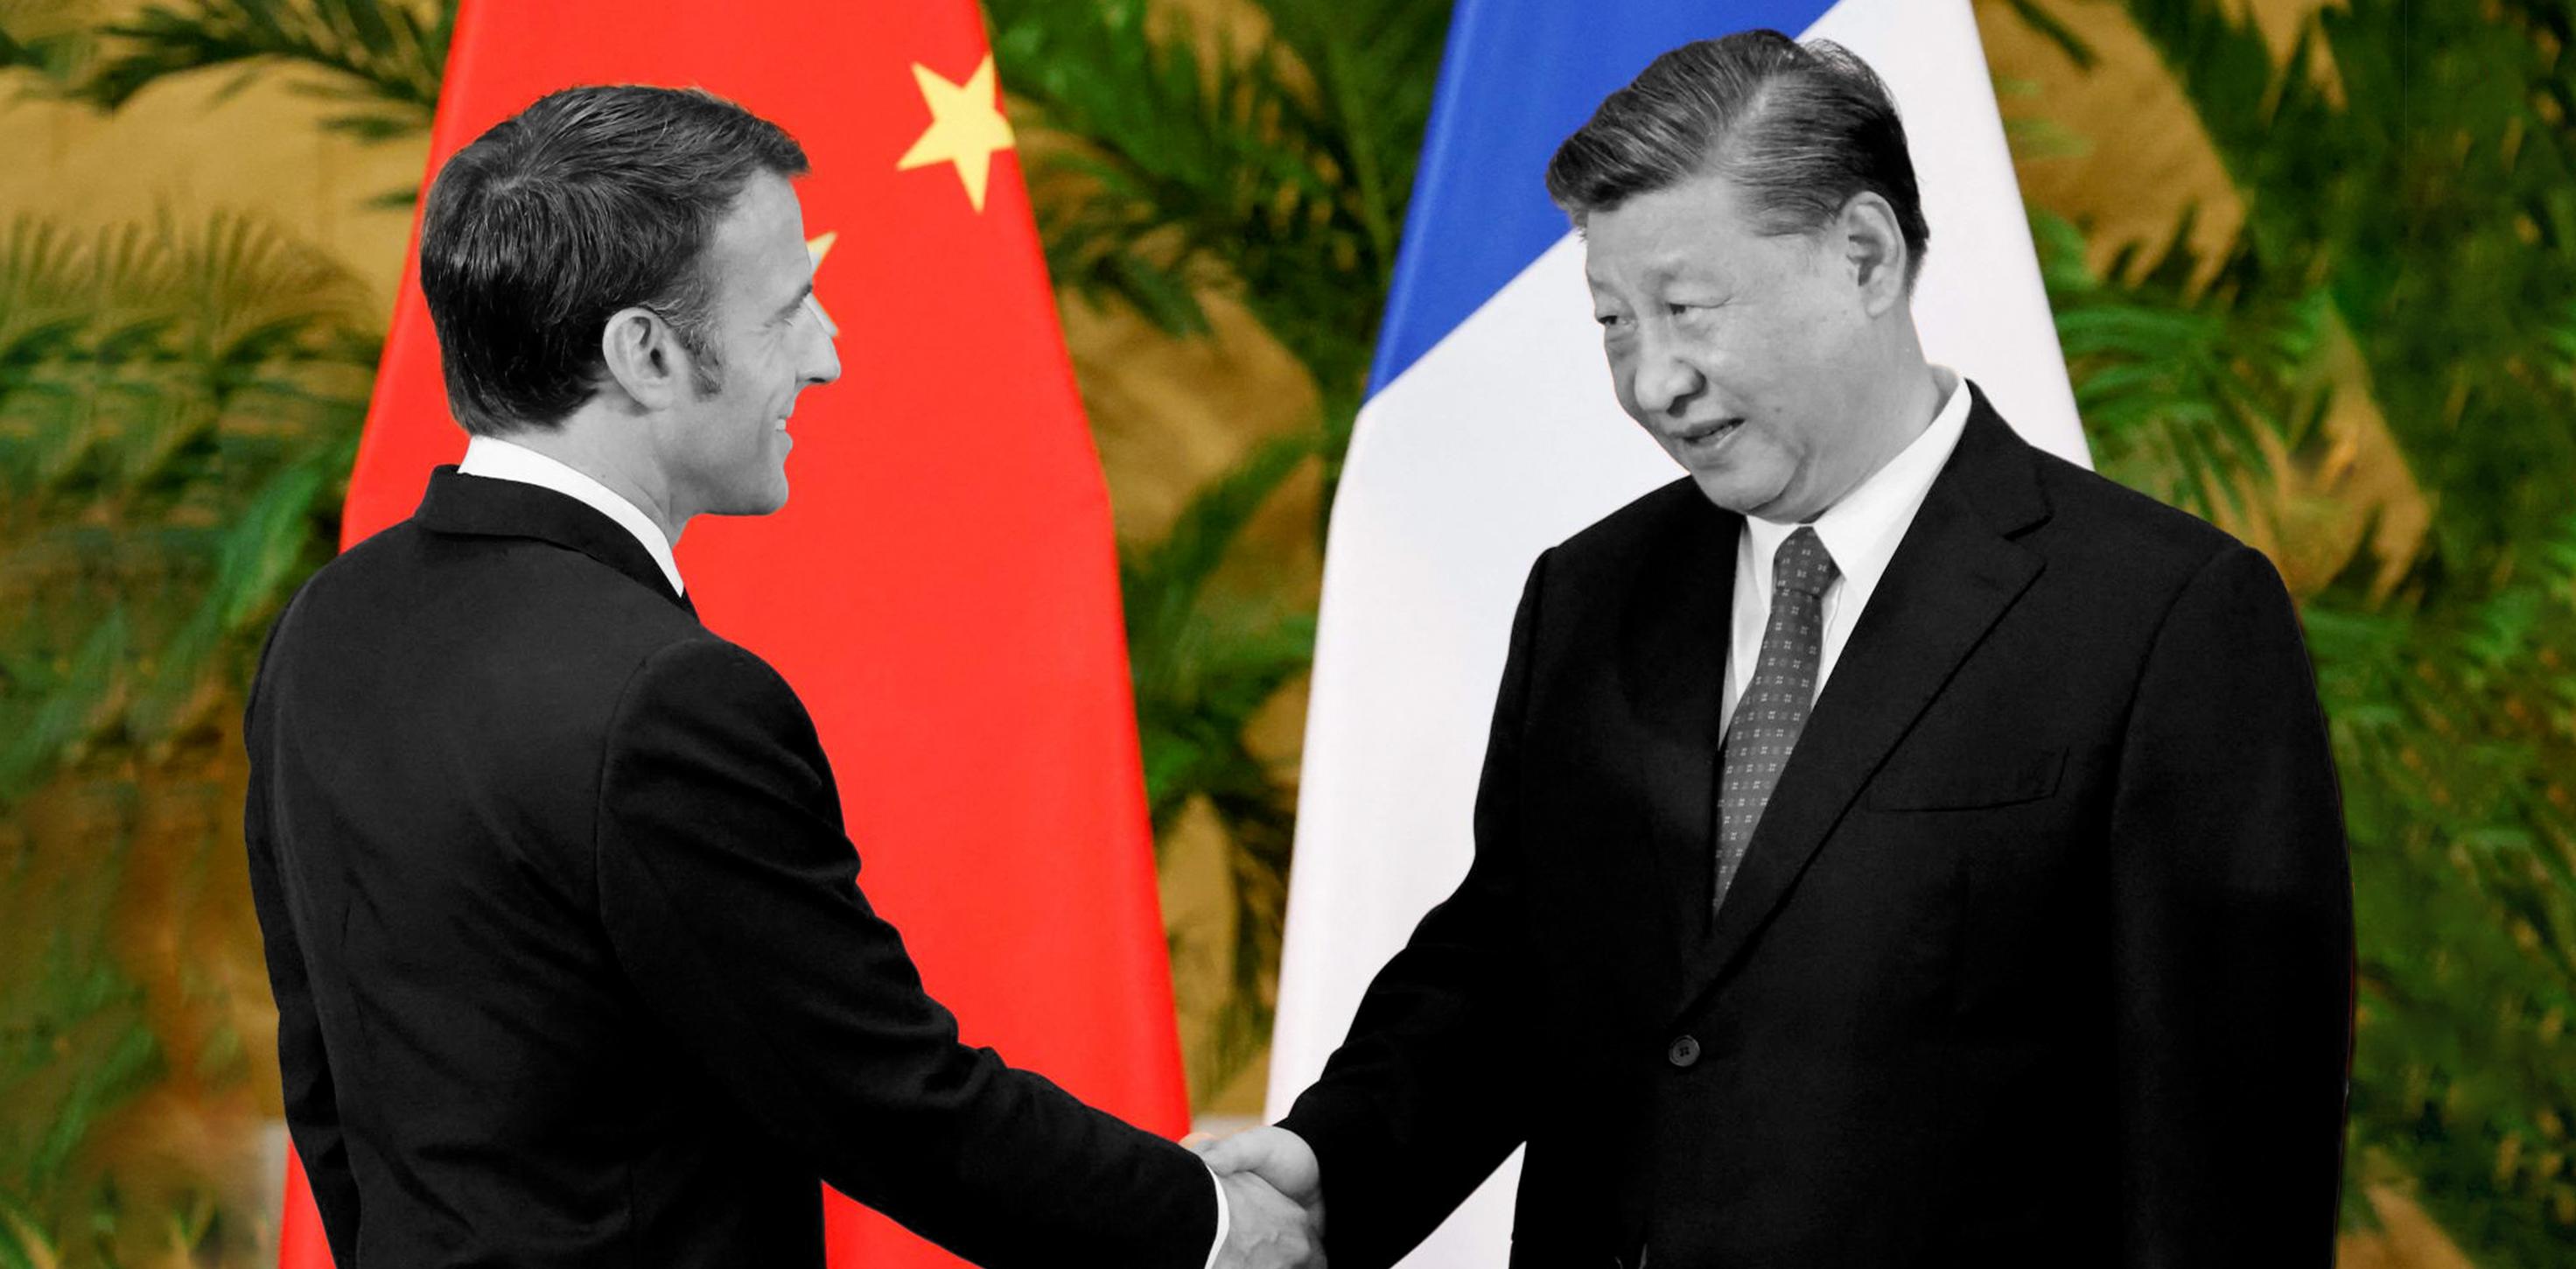 كيف تنظر فرنسا إلى العلاقات مع الصين؟